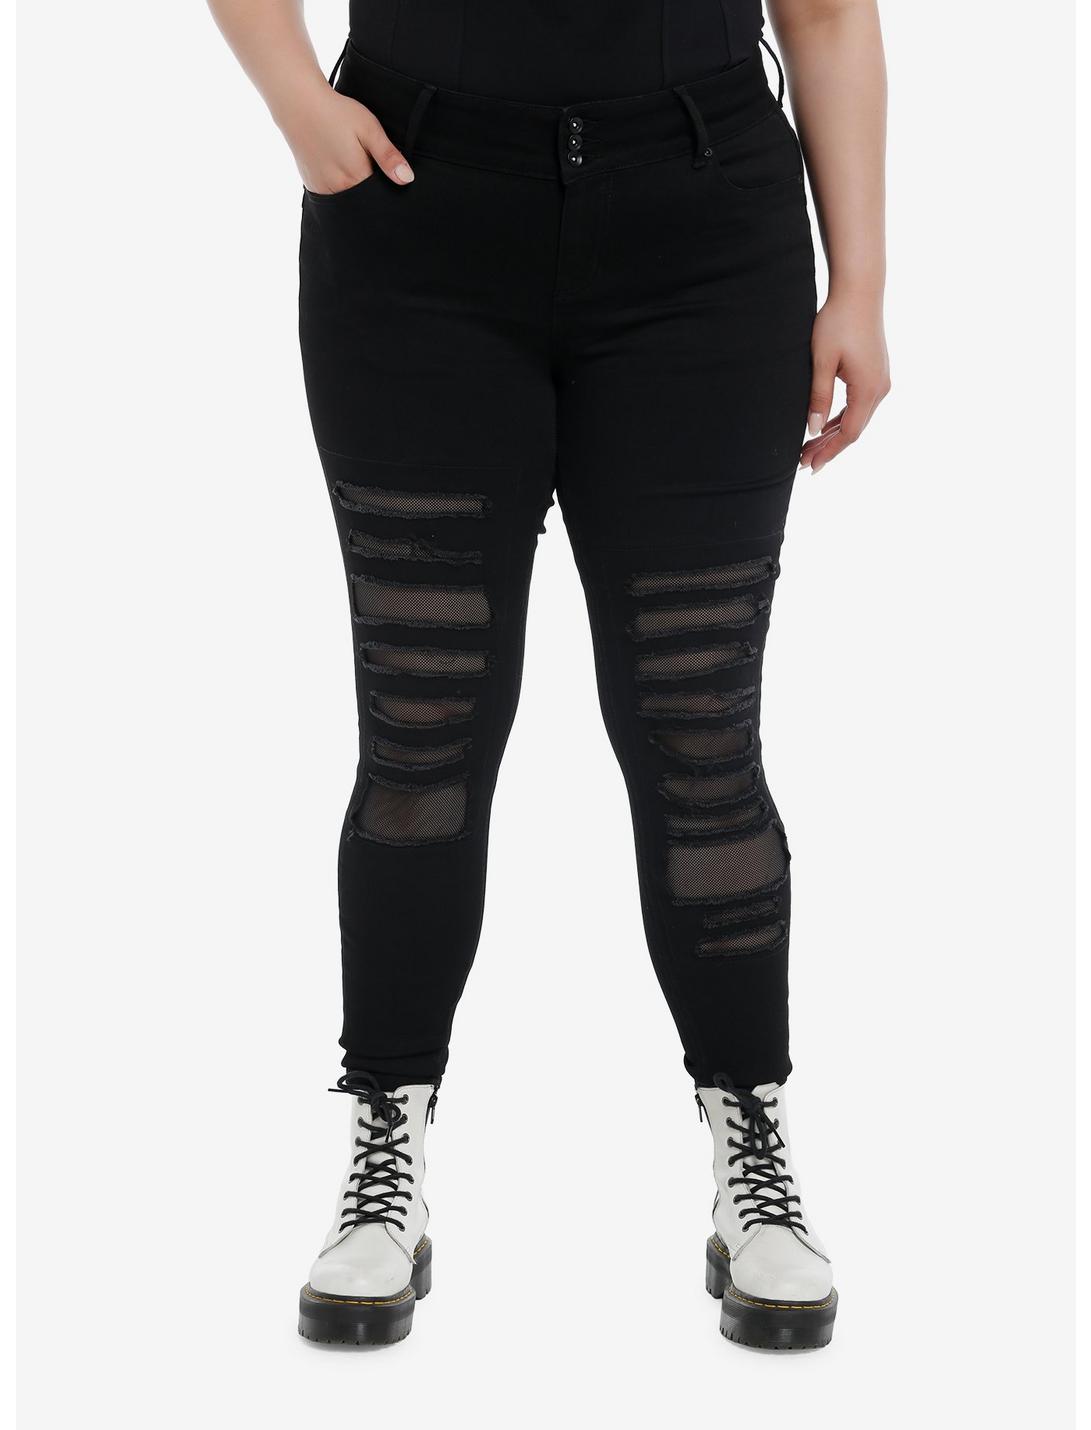 Social Collision® Black Destructed Fishnet Super Skinny Jeans Plus Size, BLACK, hi-res